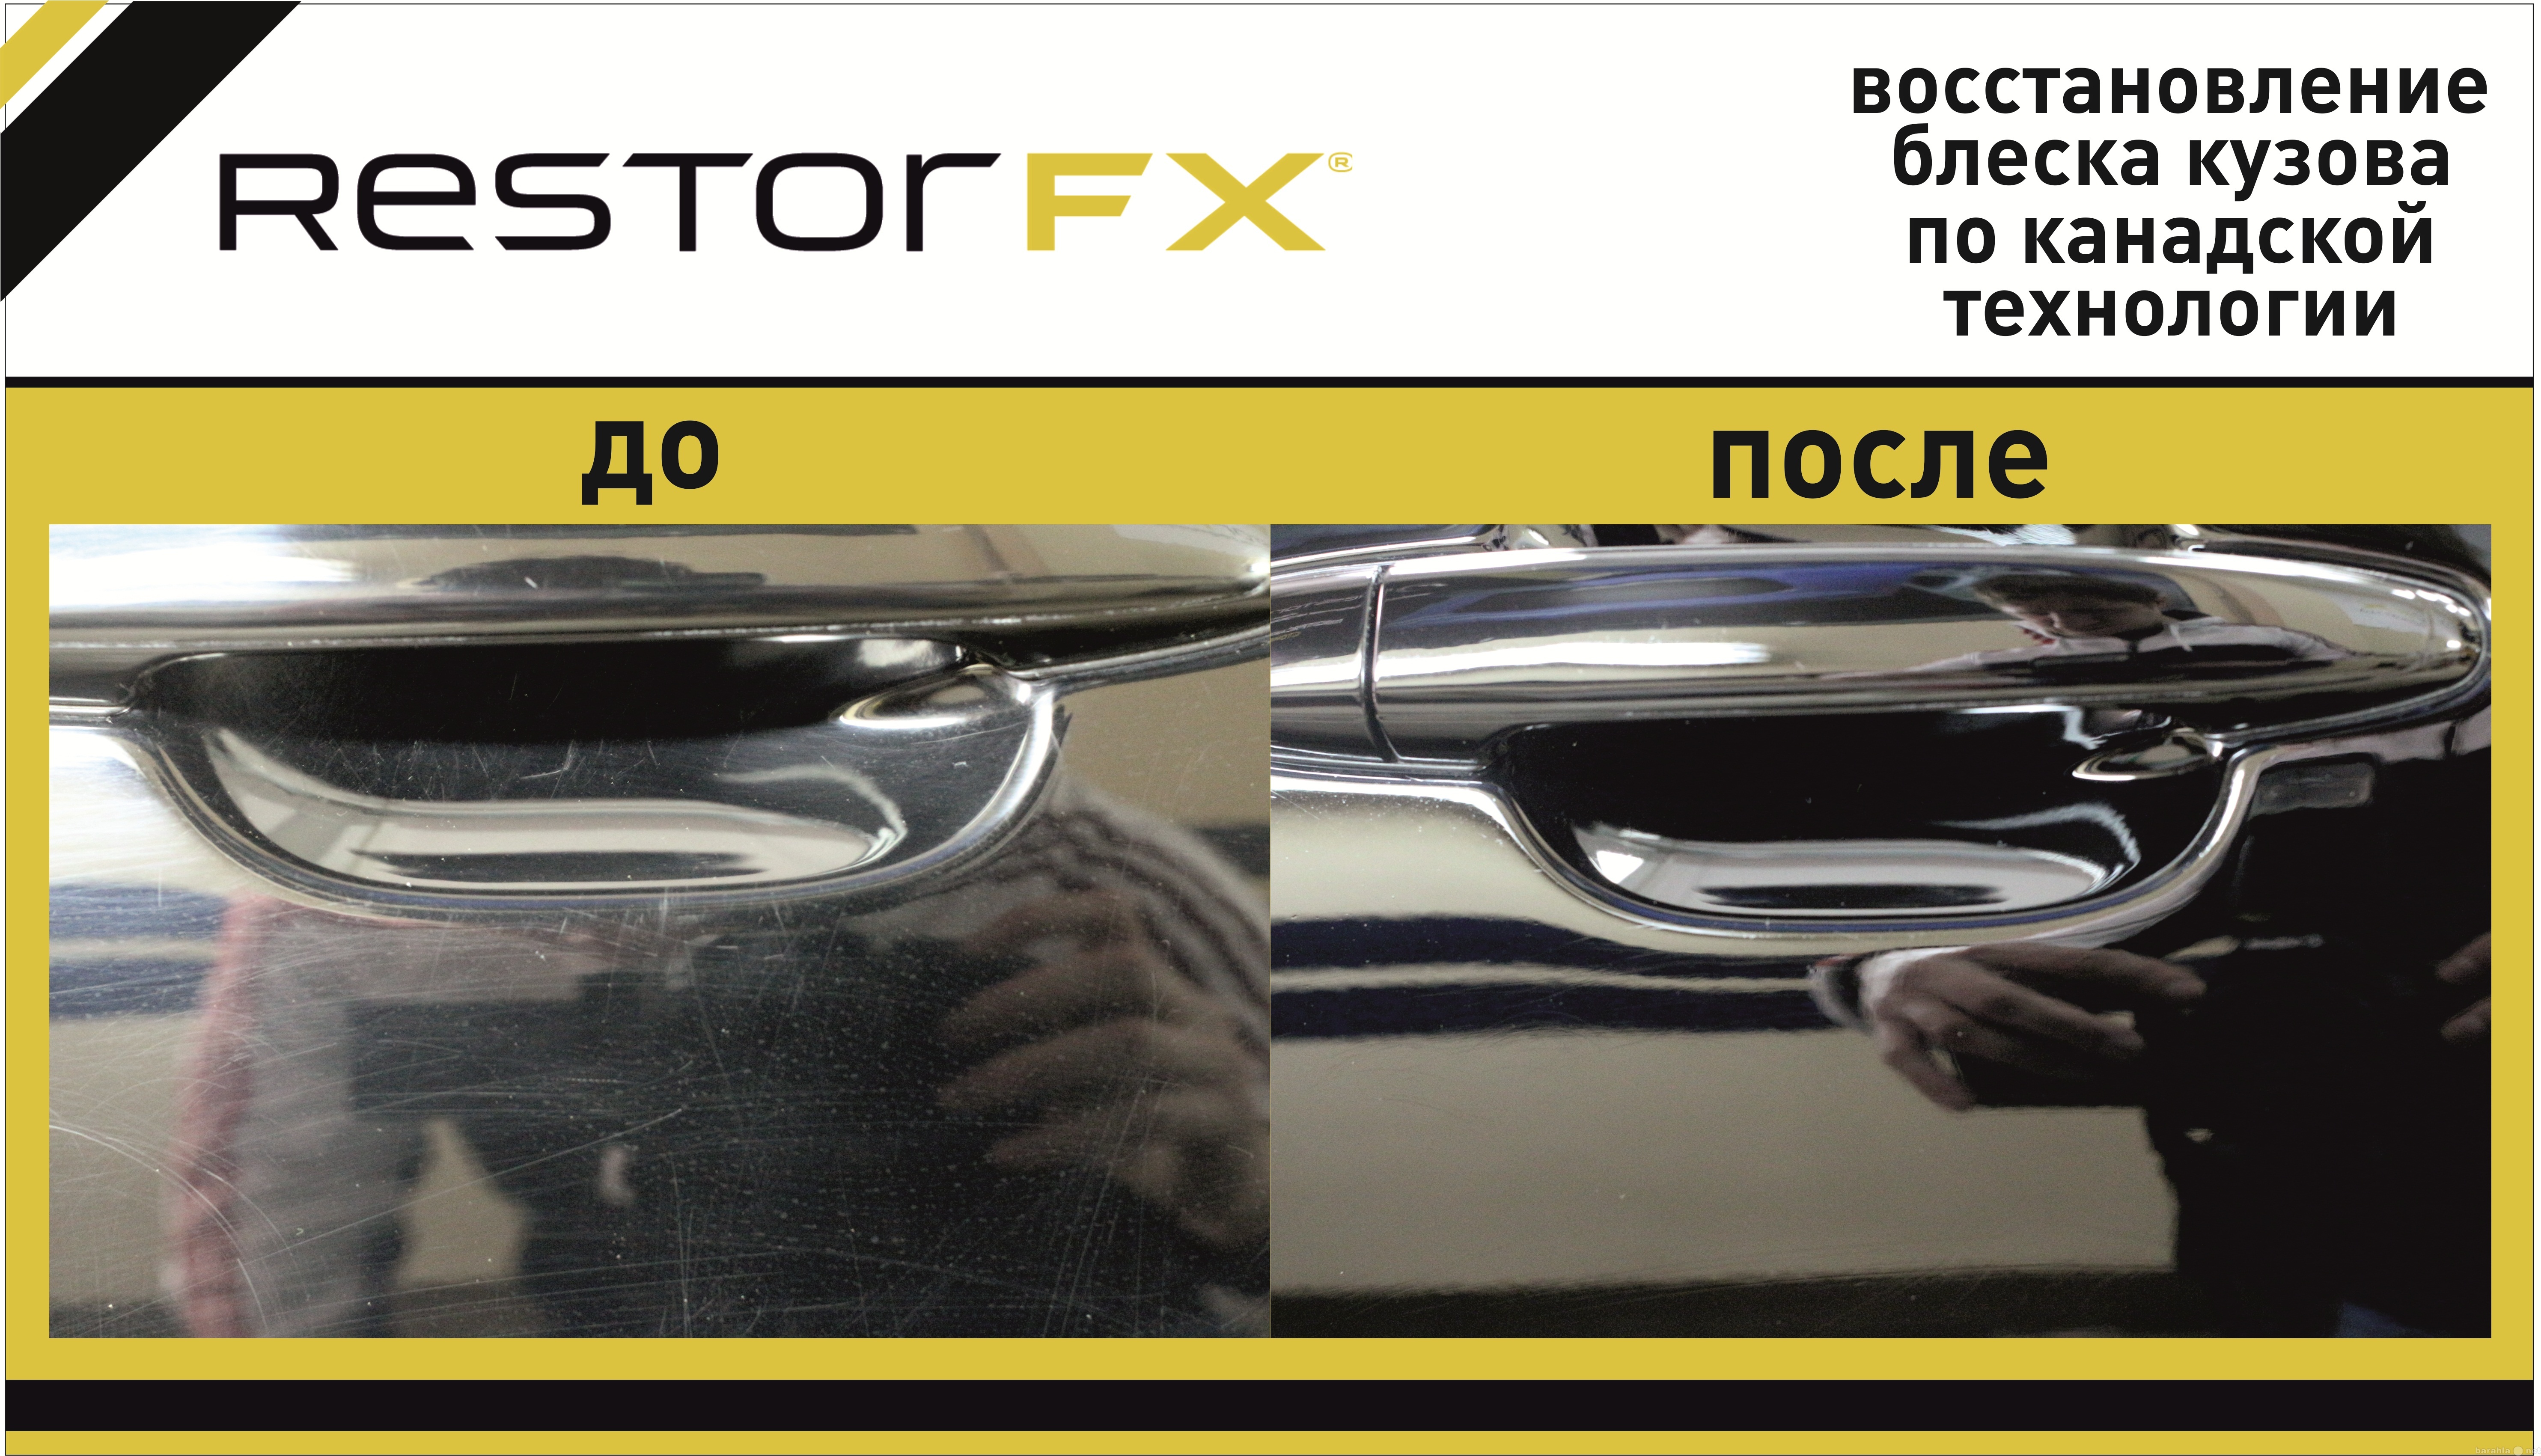 Предложение: Восстановление блеска кузова RestorFX